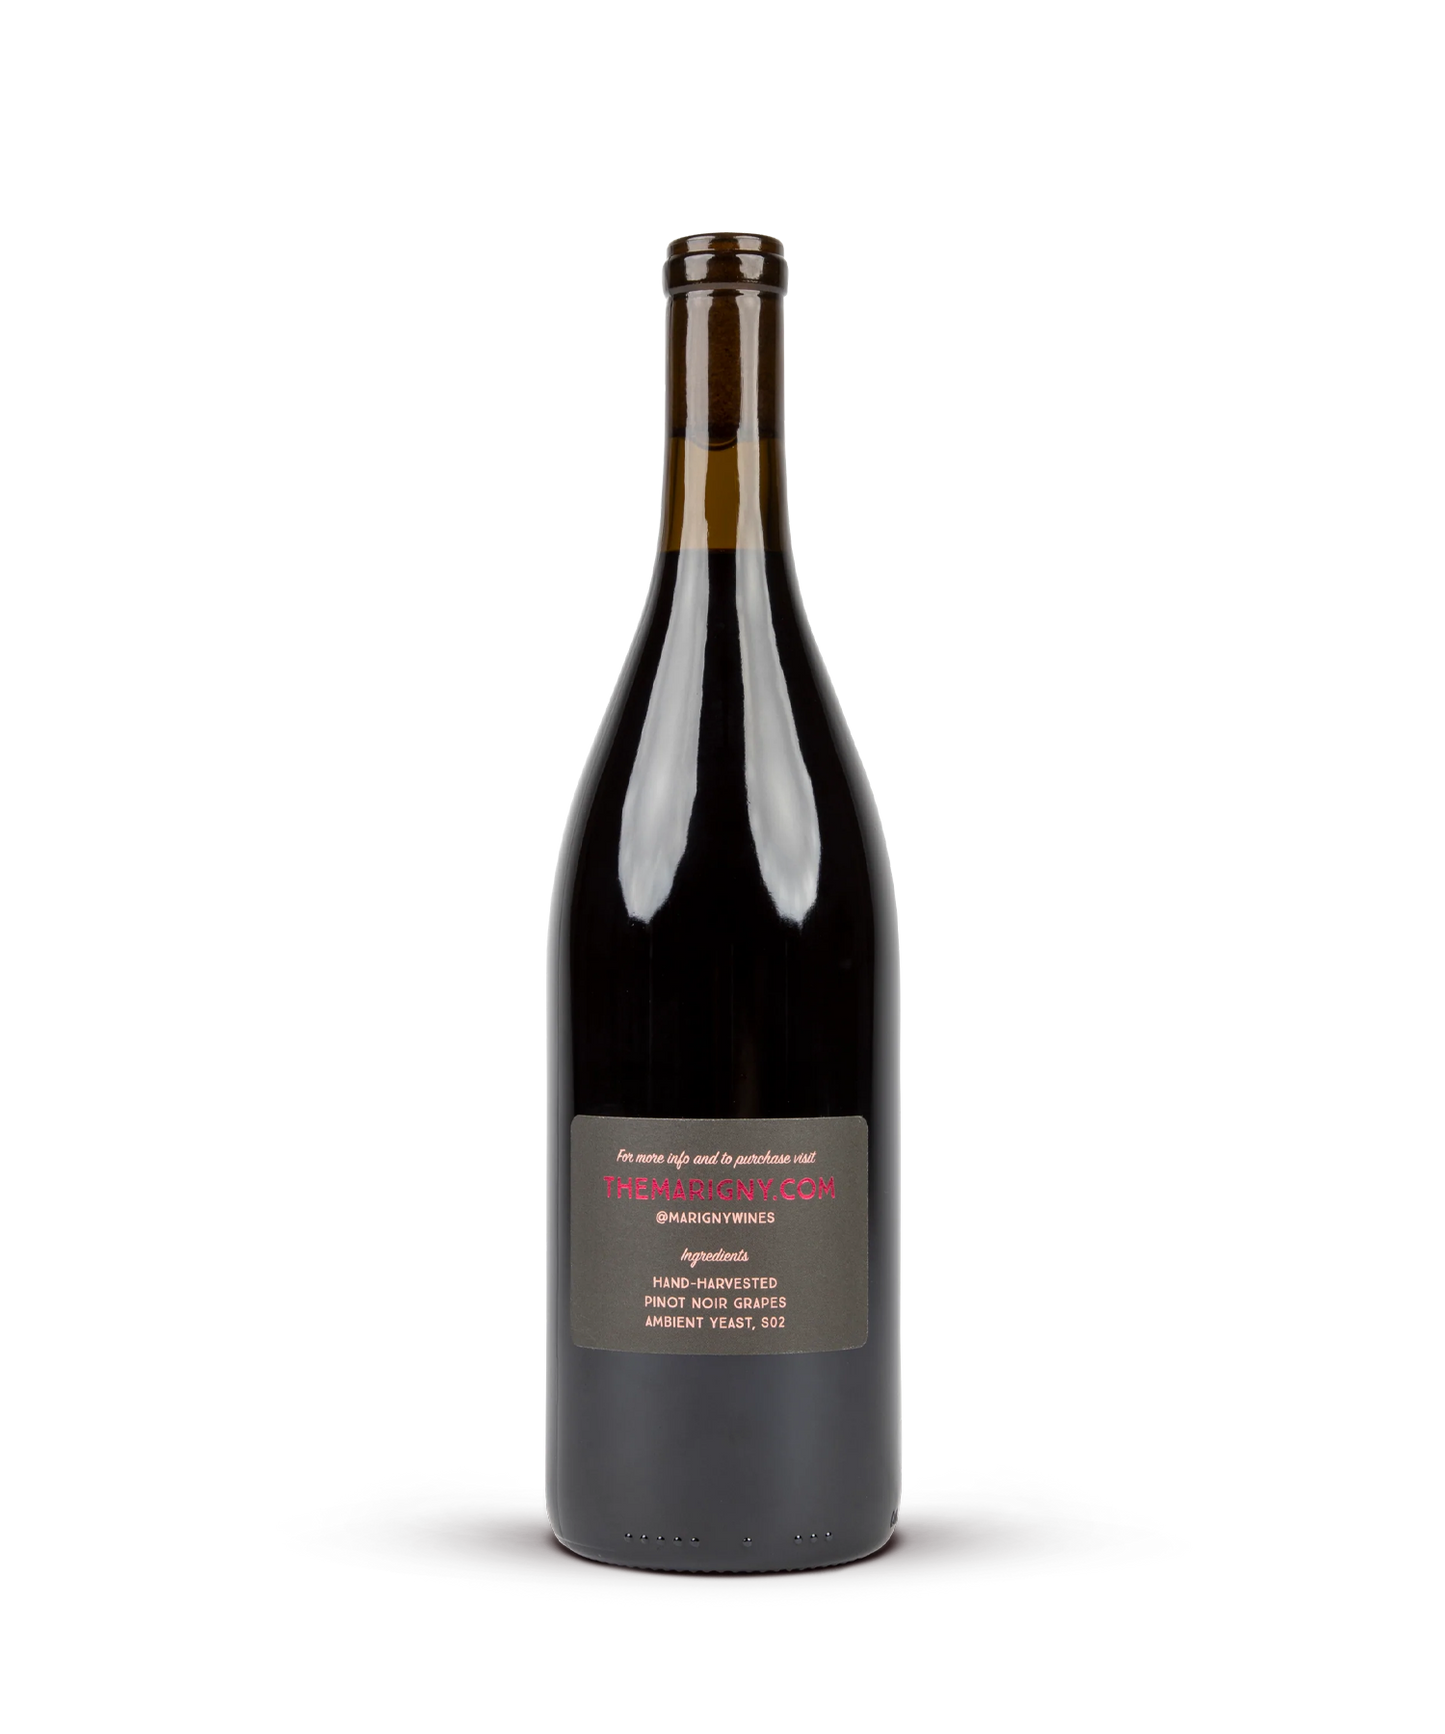 2020 Oregon Pinot Noir Super Deluxe Cuvée